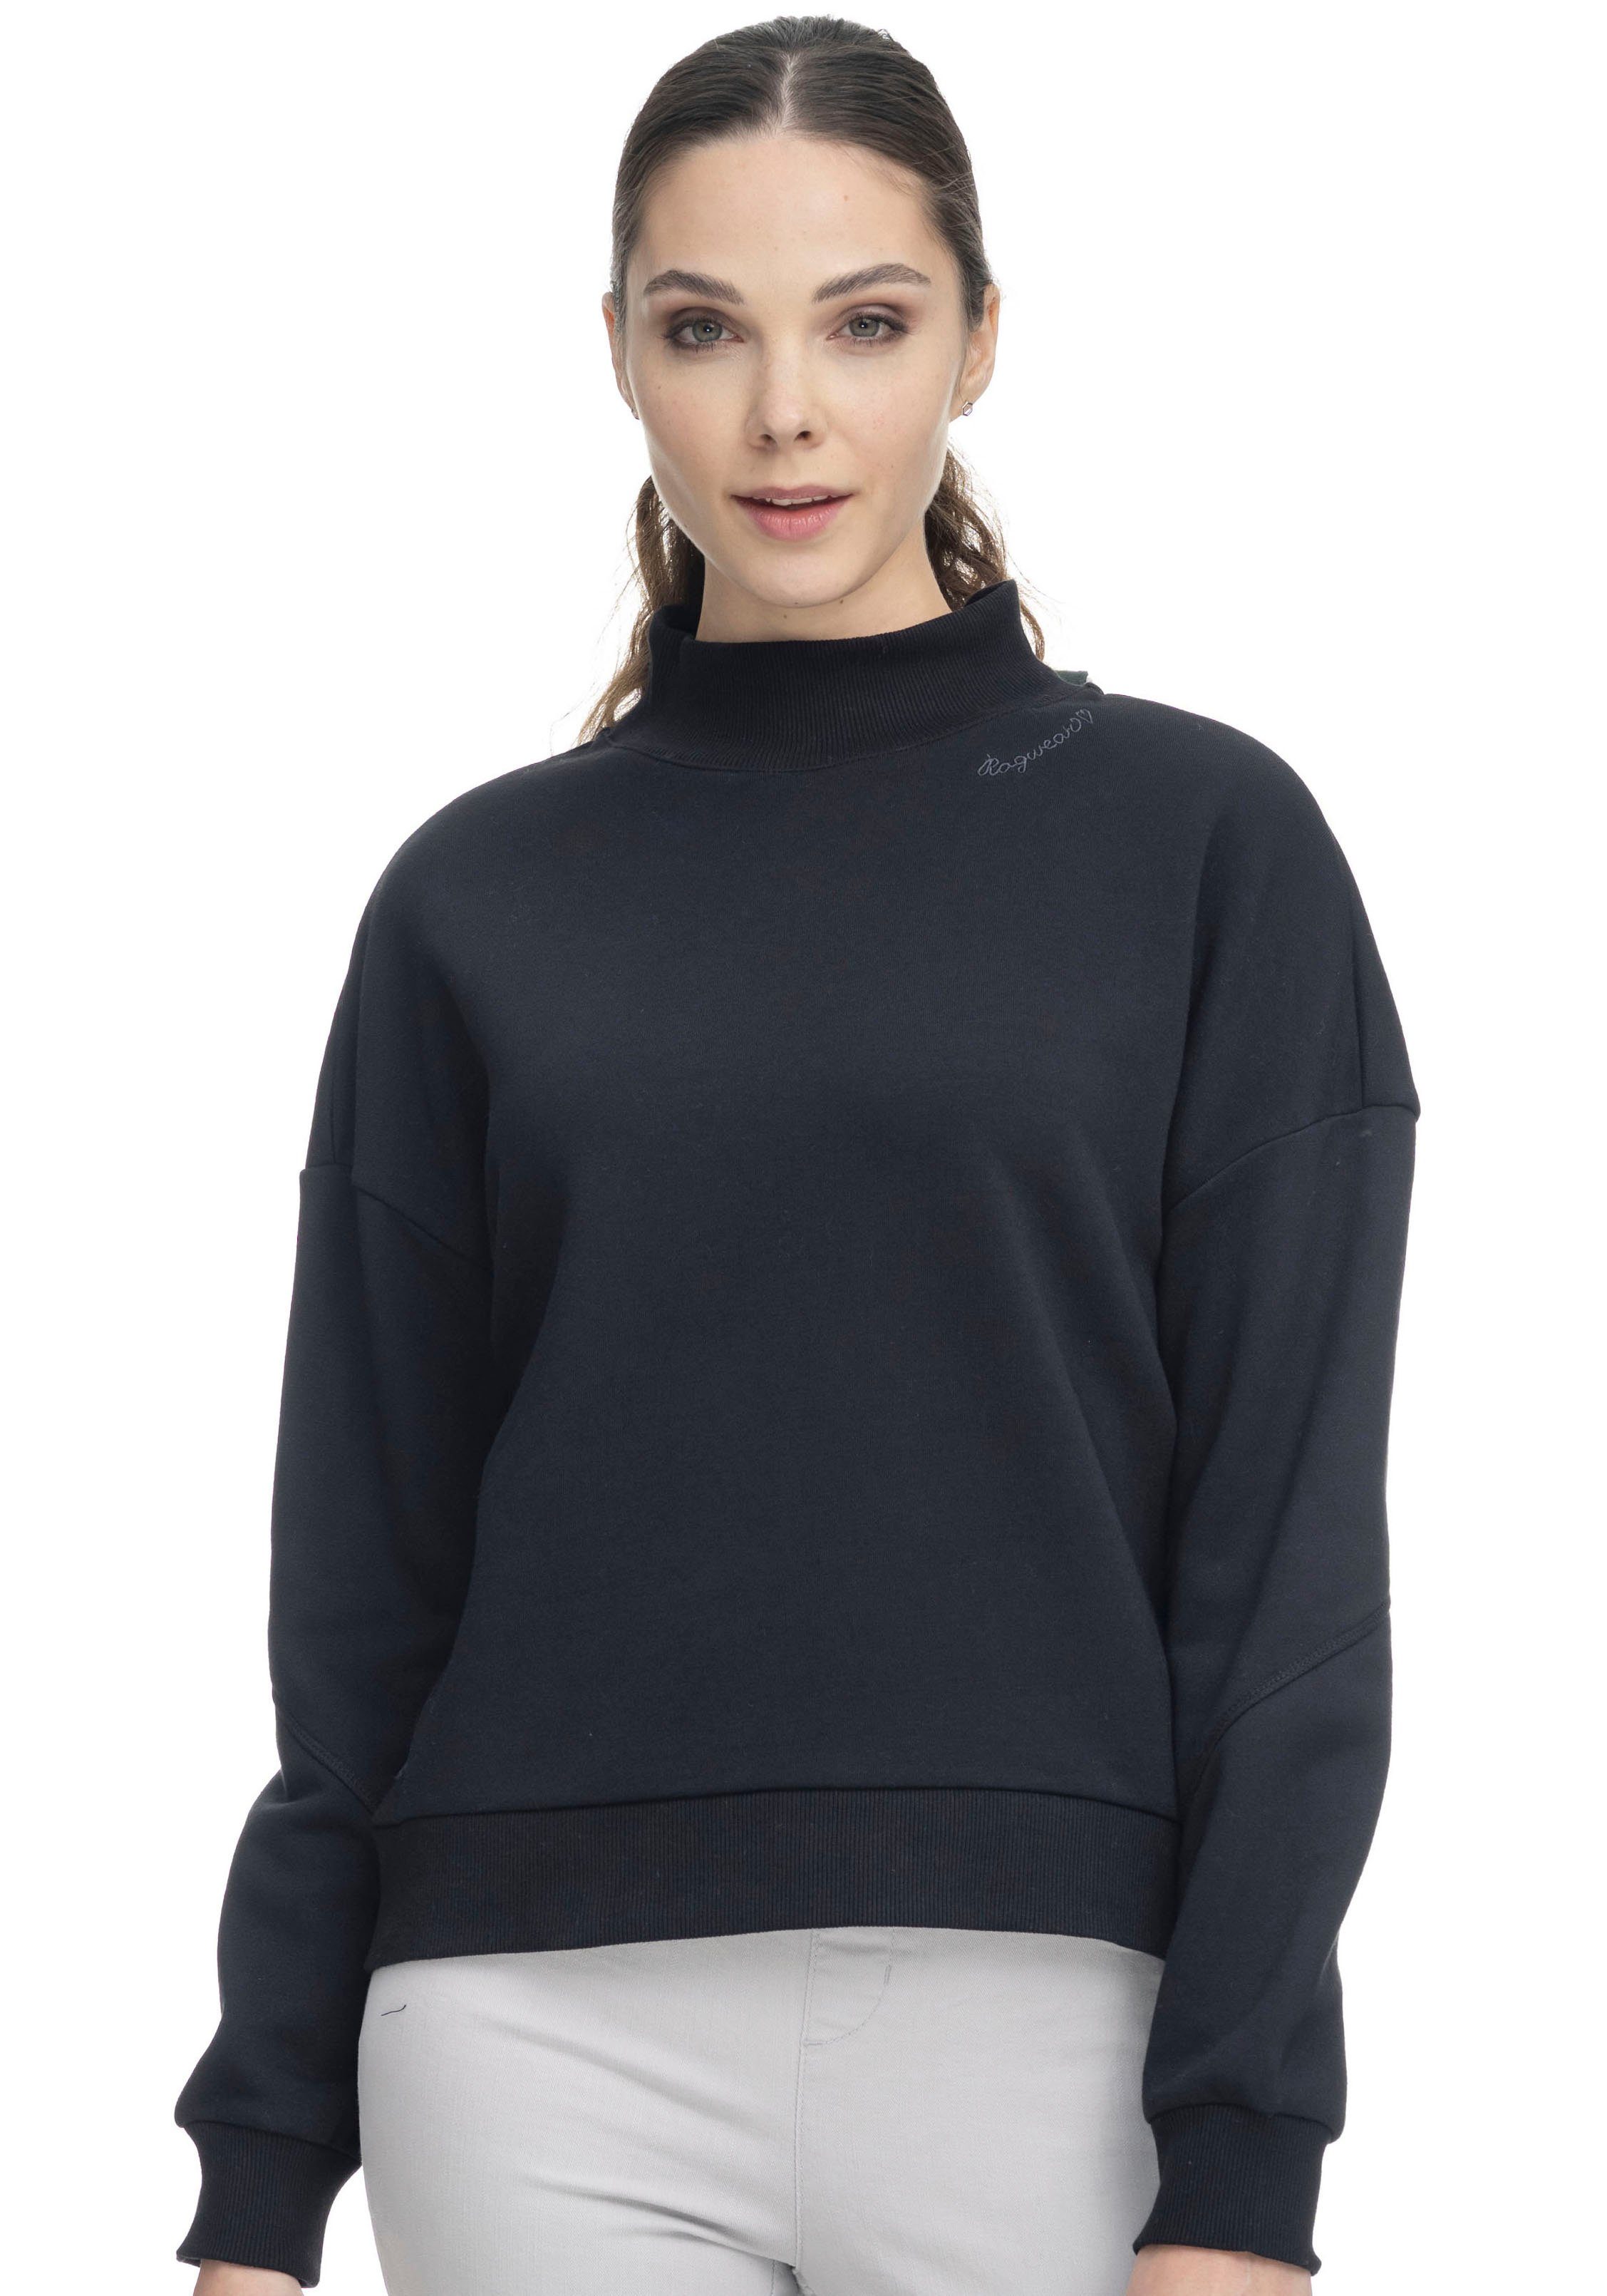 SWEAT 1010 Sweater black KAILA Ragwear